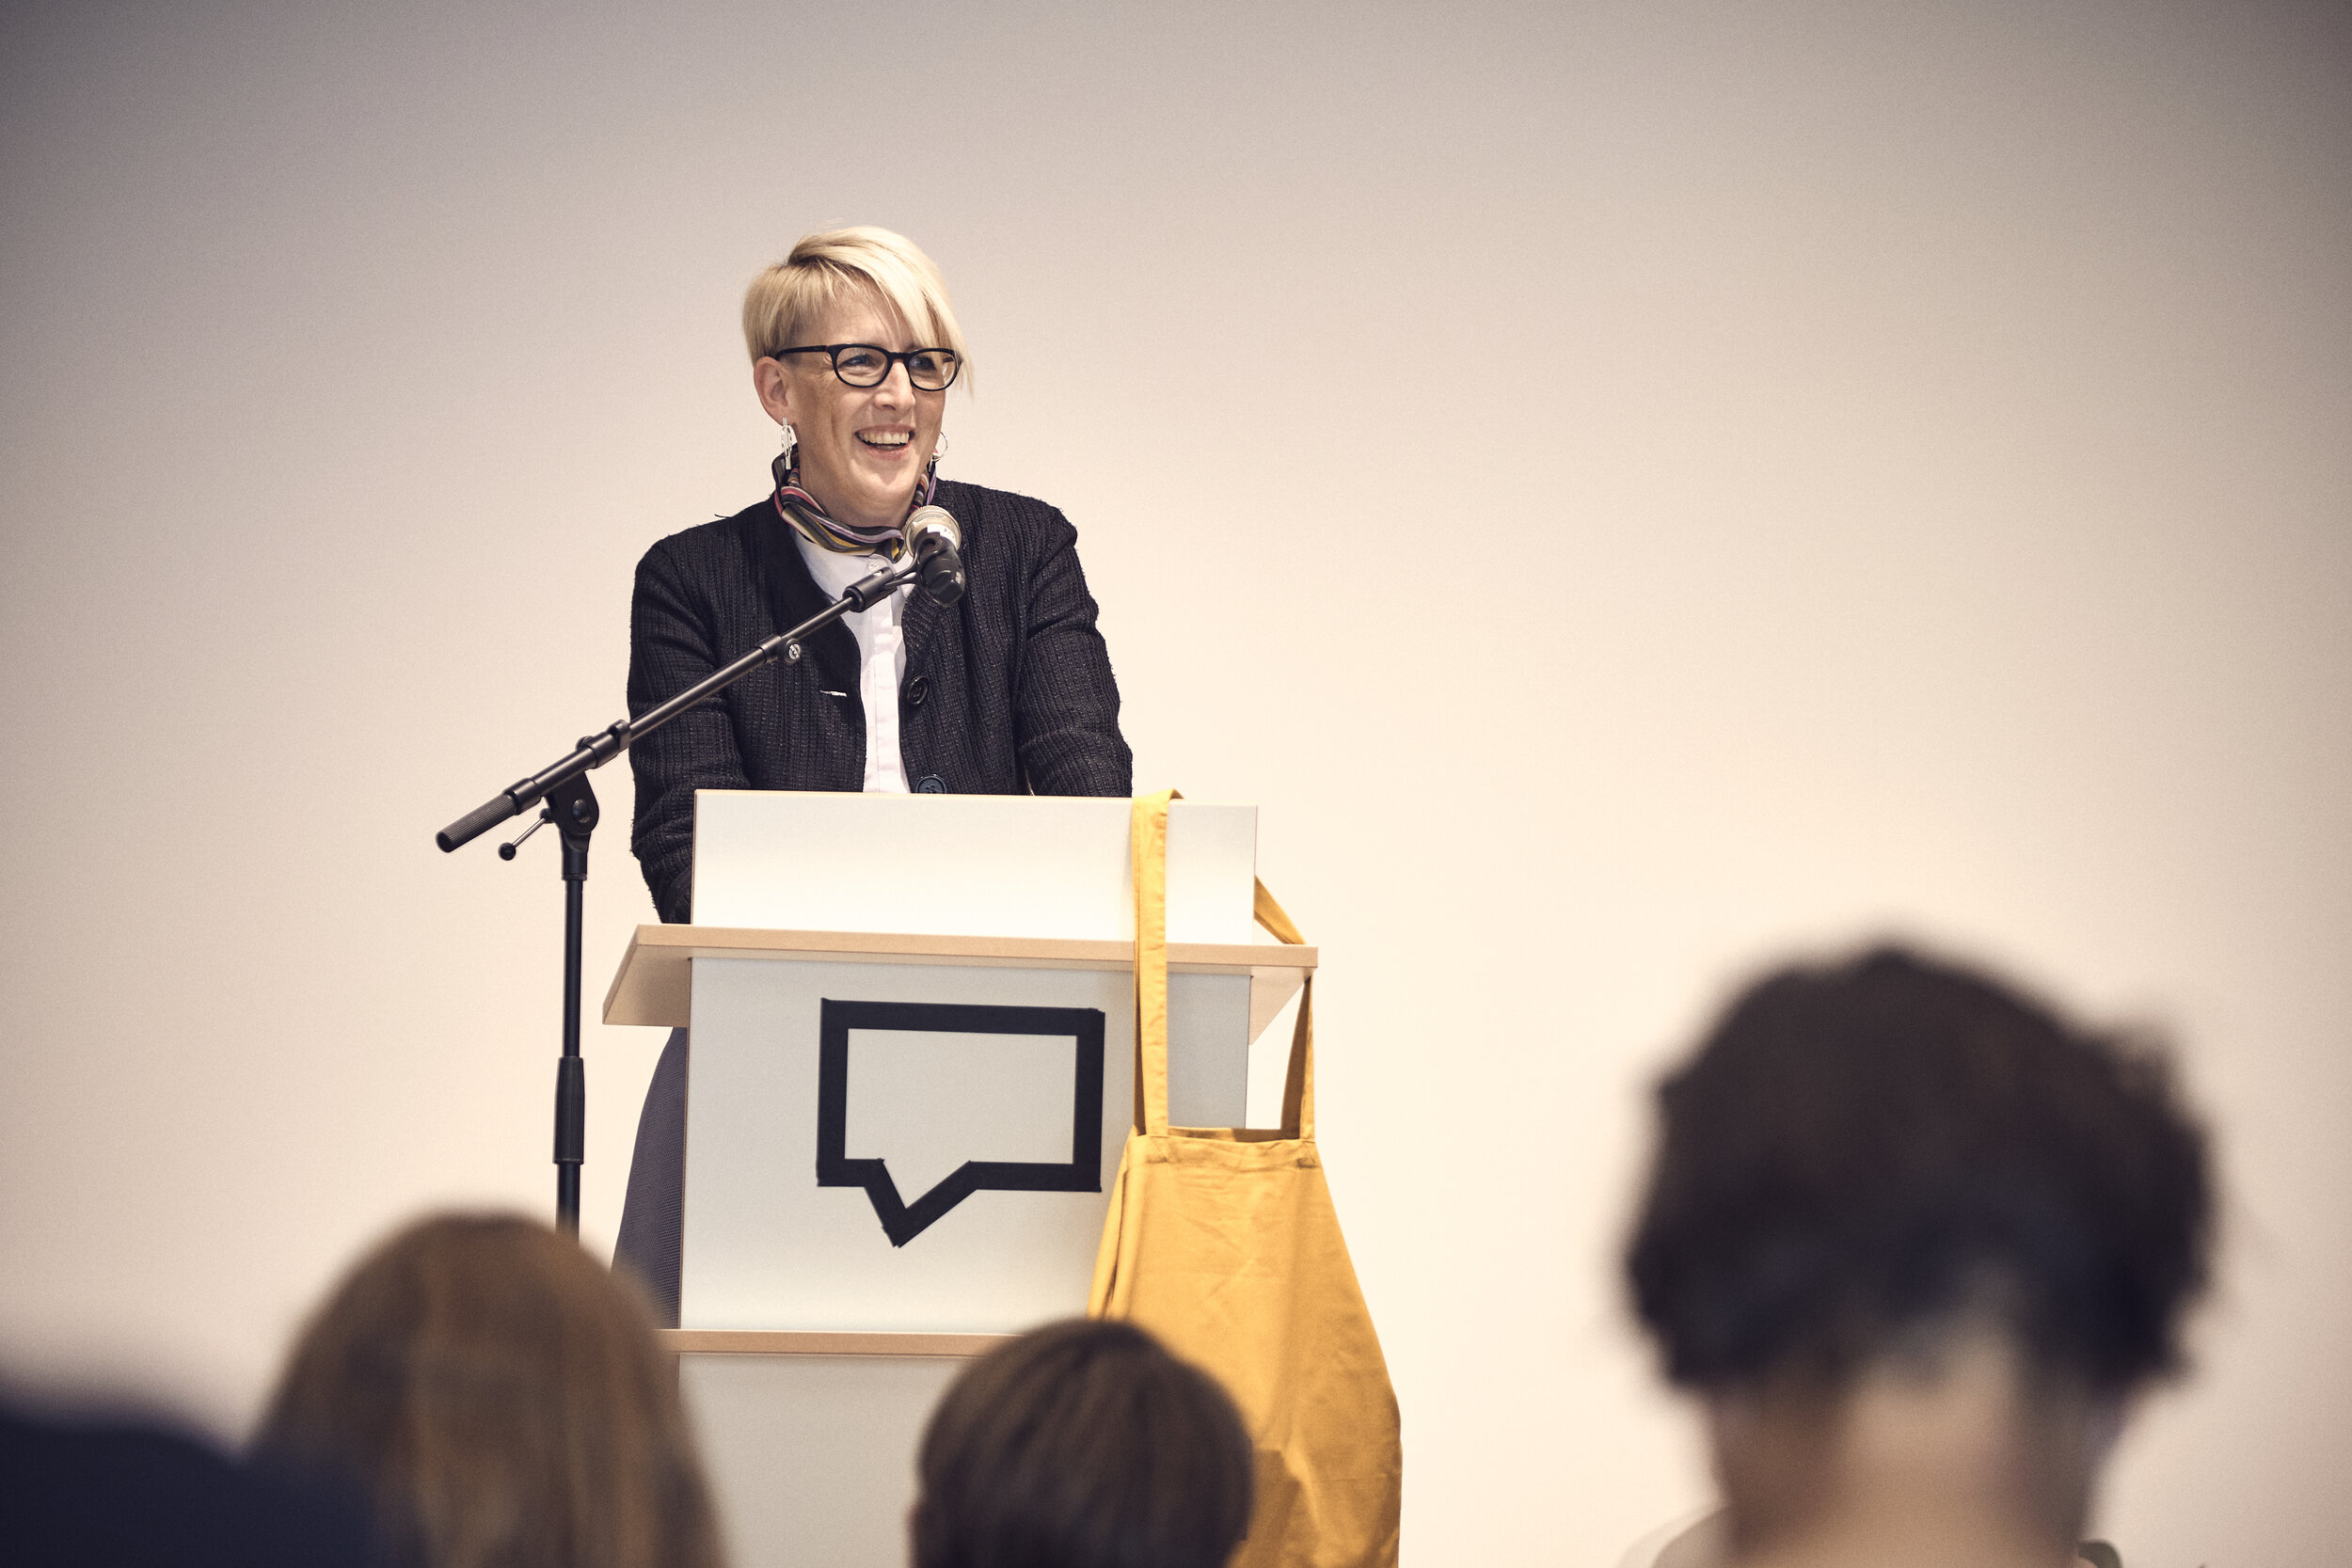  Münchens Bürgermeisterin Katrin Habenschaden spricht Ihr Grußwort bei der Eröffnung der Luise. 